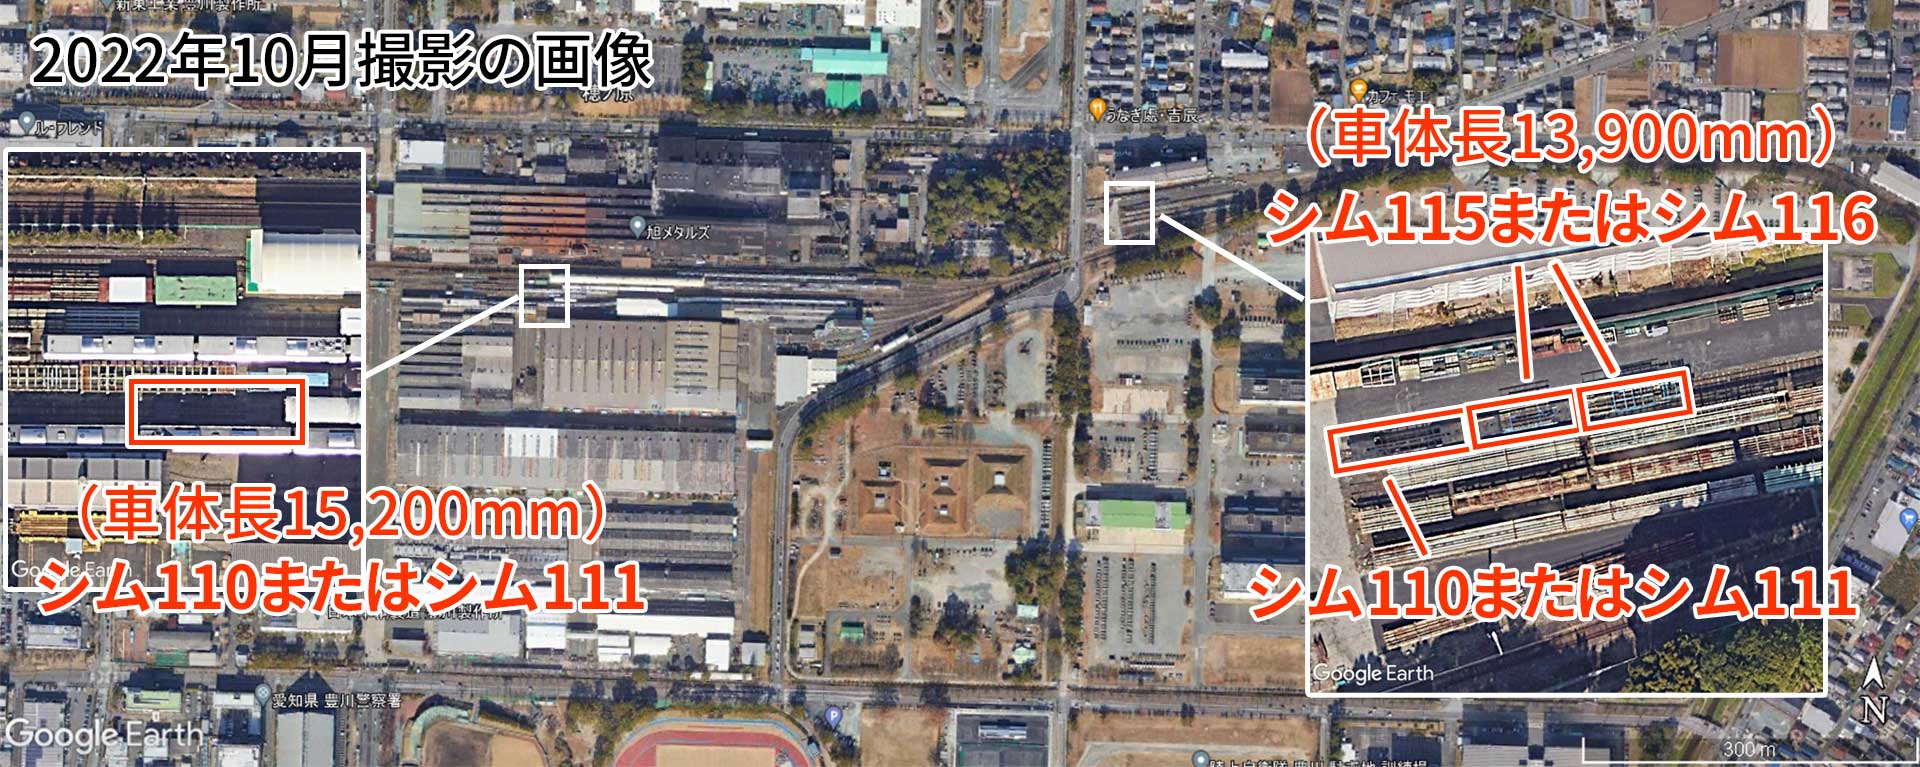 日本車輌製造衛星画像